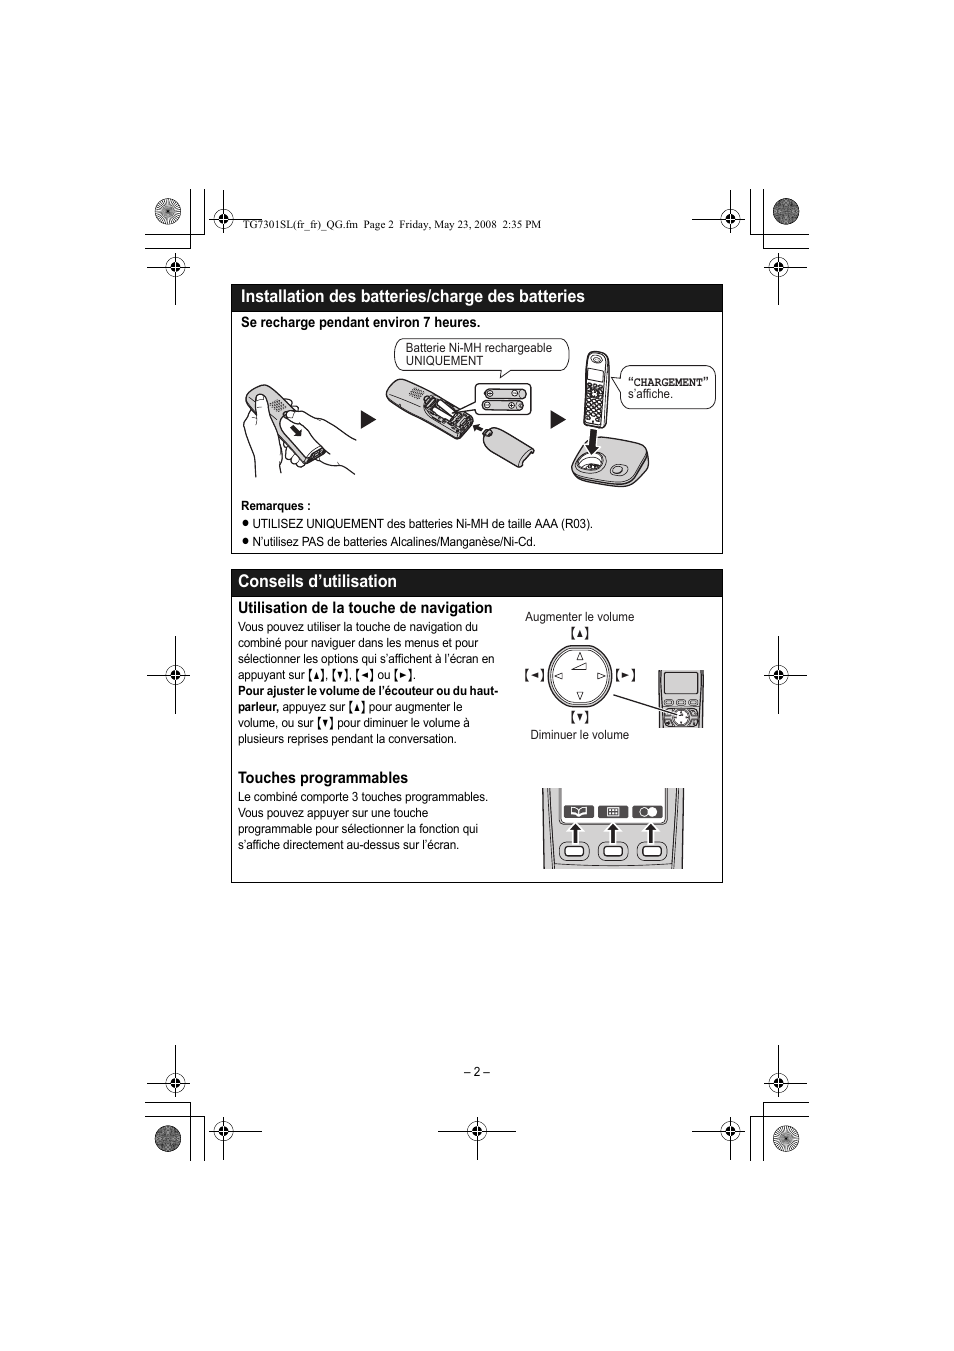 Installation des batteries/charge des batteries, Conseils d’utilisation | Panasonic KXTG7301SL Manuel d'utilisation | Page 2 / 8